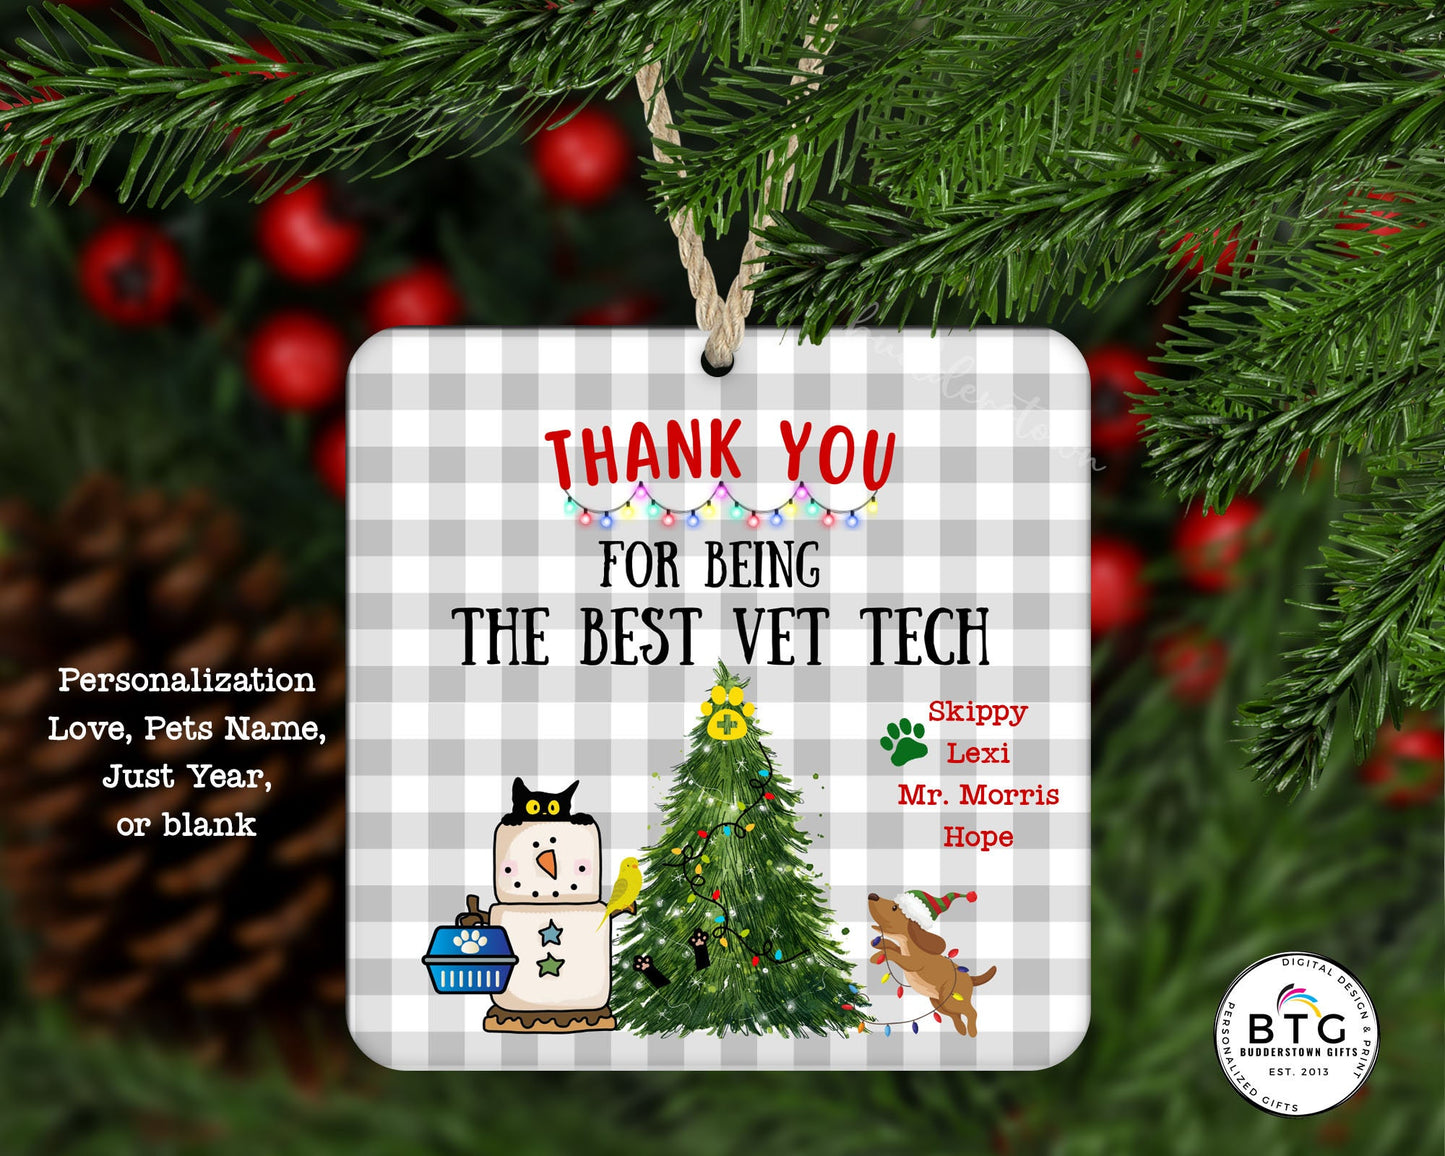 Vet Tech Ornament - Vet Tech Gift - Gift for Vet Tech